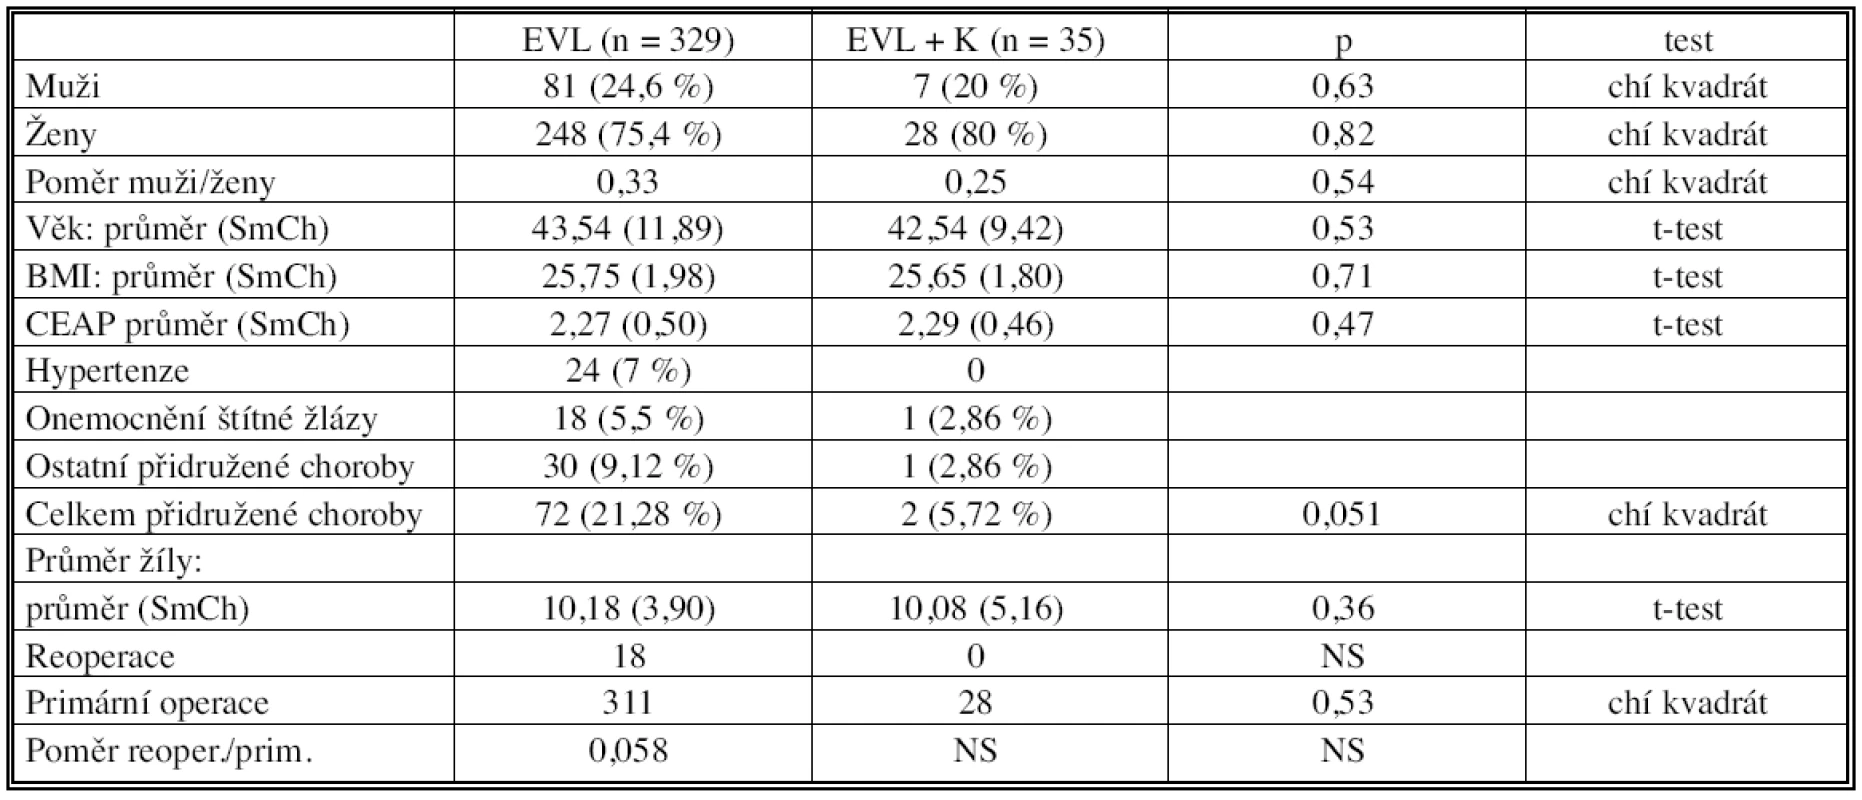 Předoperační data pacientů s endovaskulárním (EVL) a kombinovaným (EVL+K) výkonem
Tab. 1. Preoperative data of patients with endovascular (EVL) and combined procedure (EVL + K)